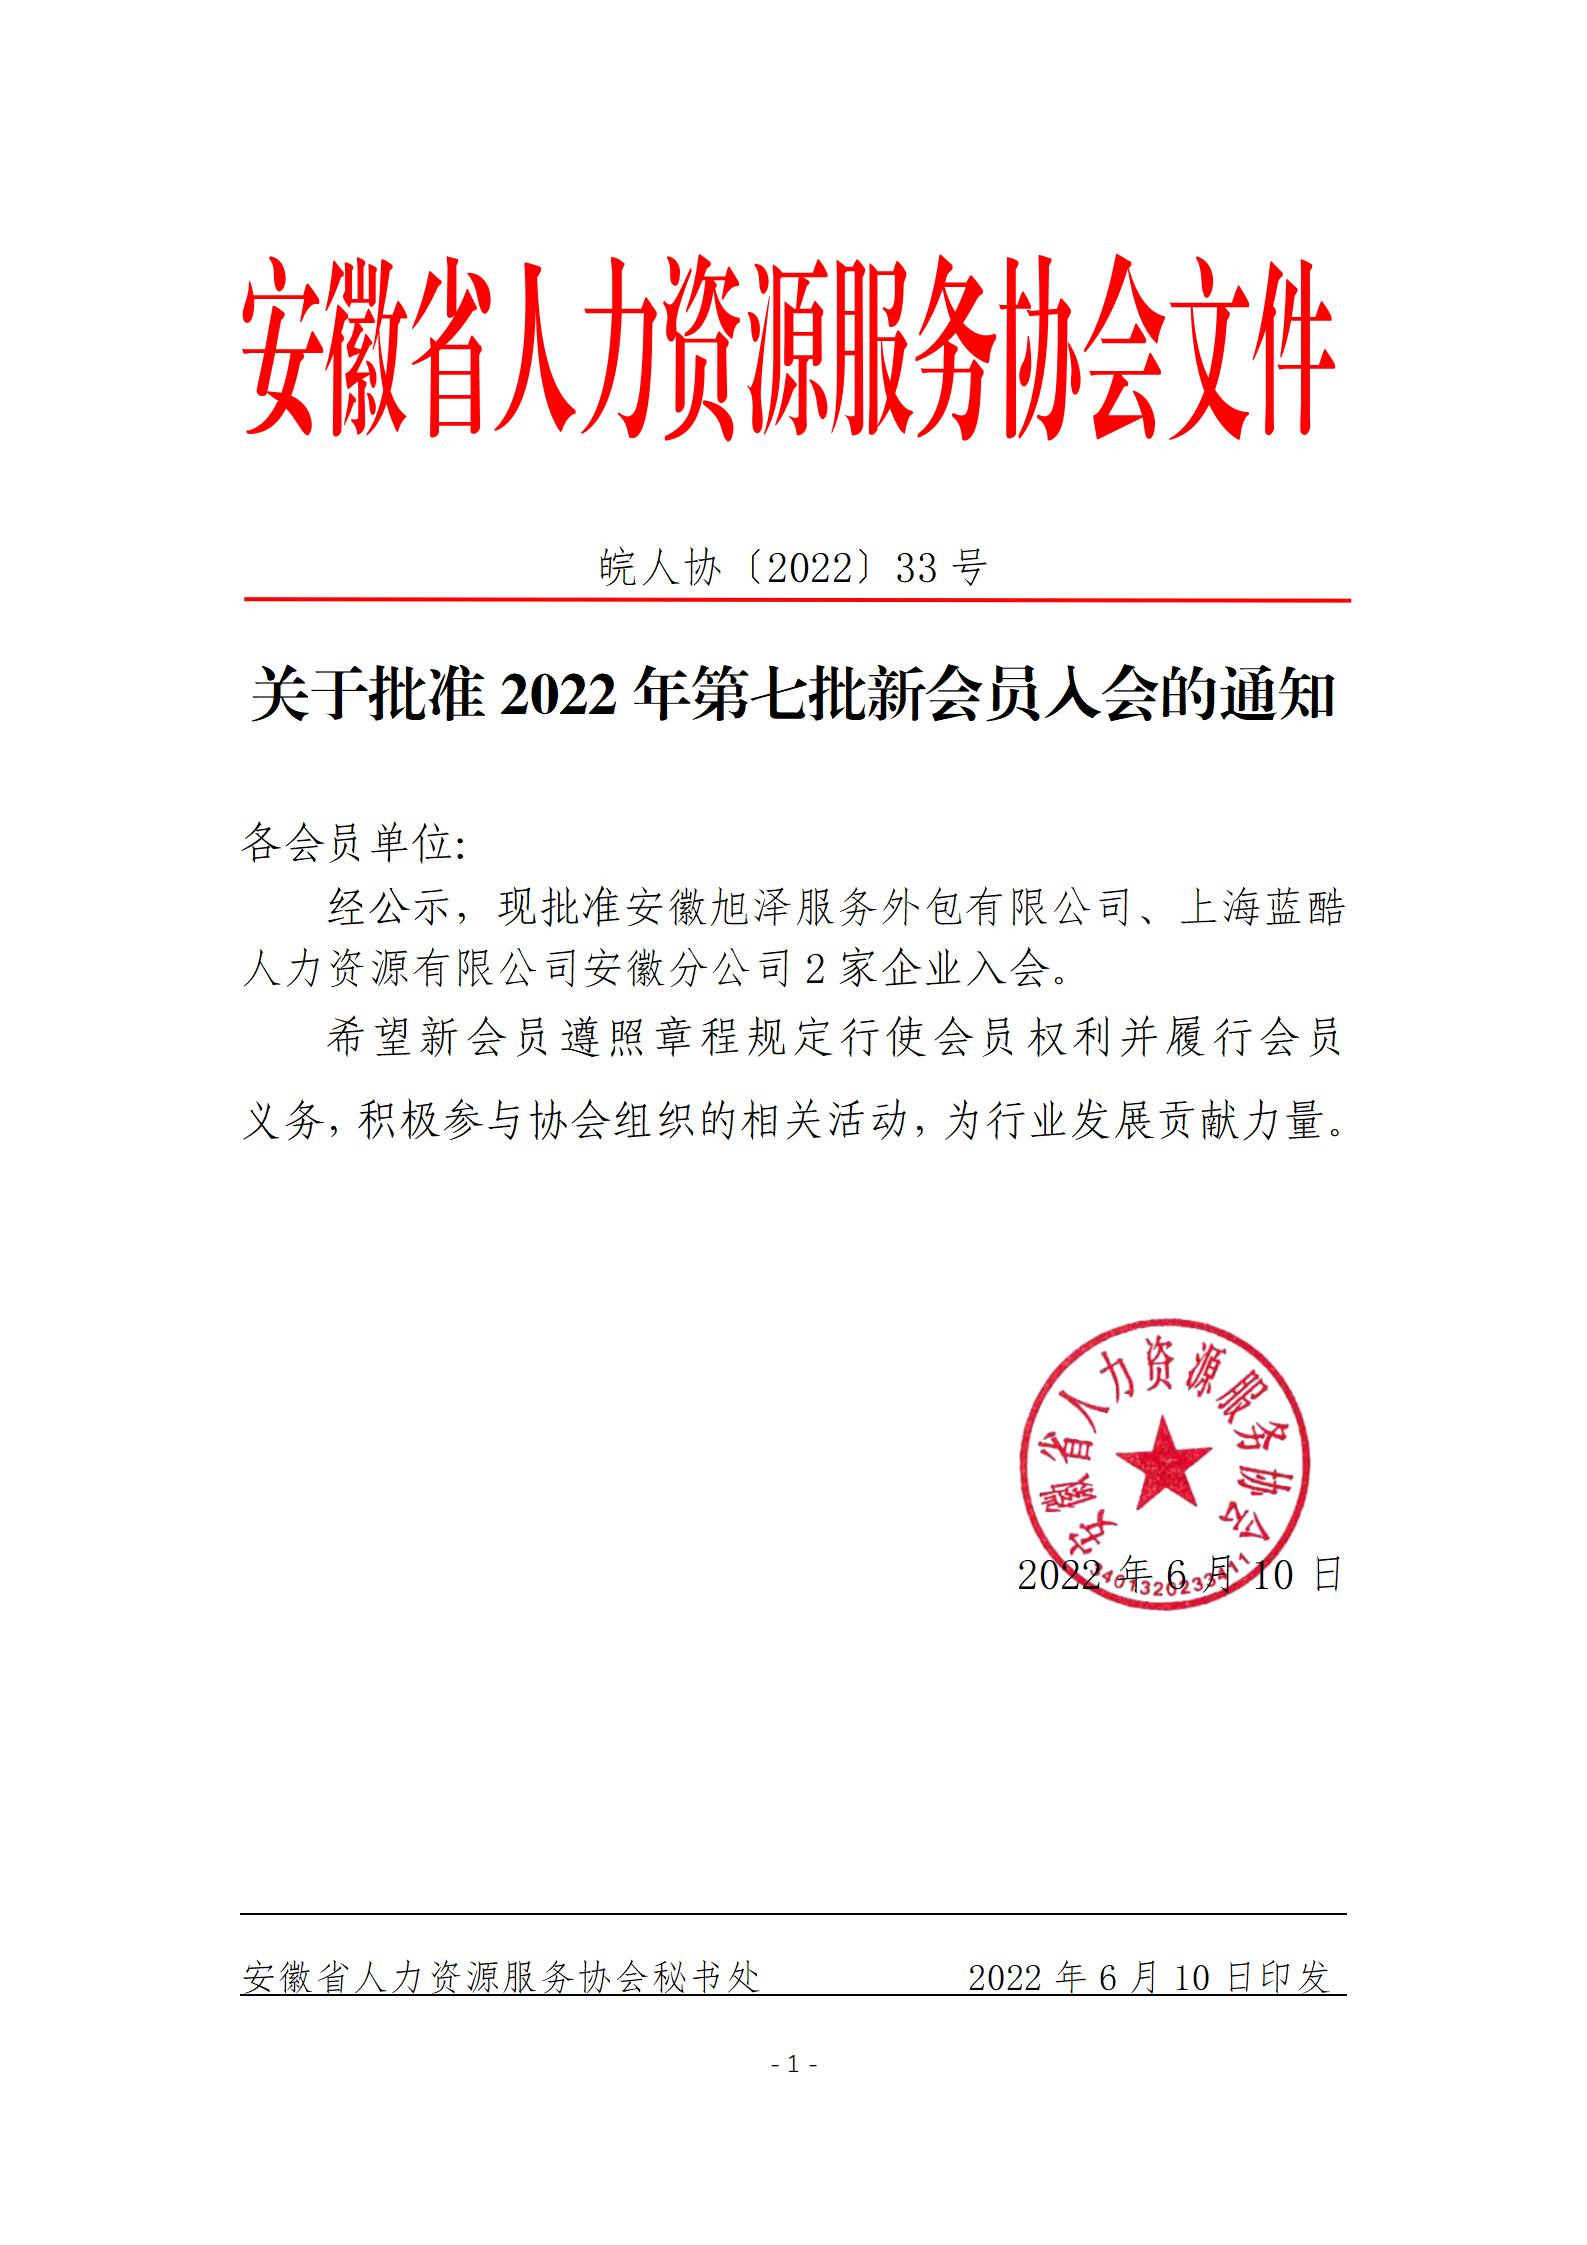 皖人协（2022）33号，关于批准2022年第七批新会员入会的通知_01.jpg